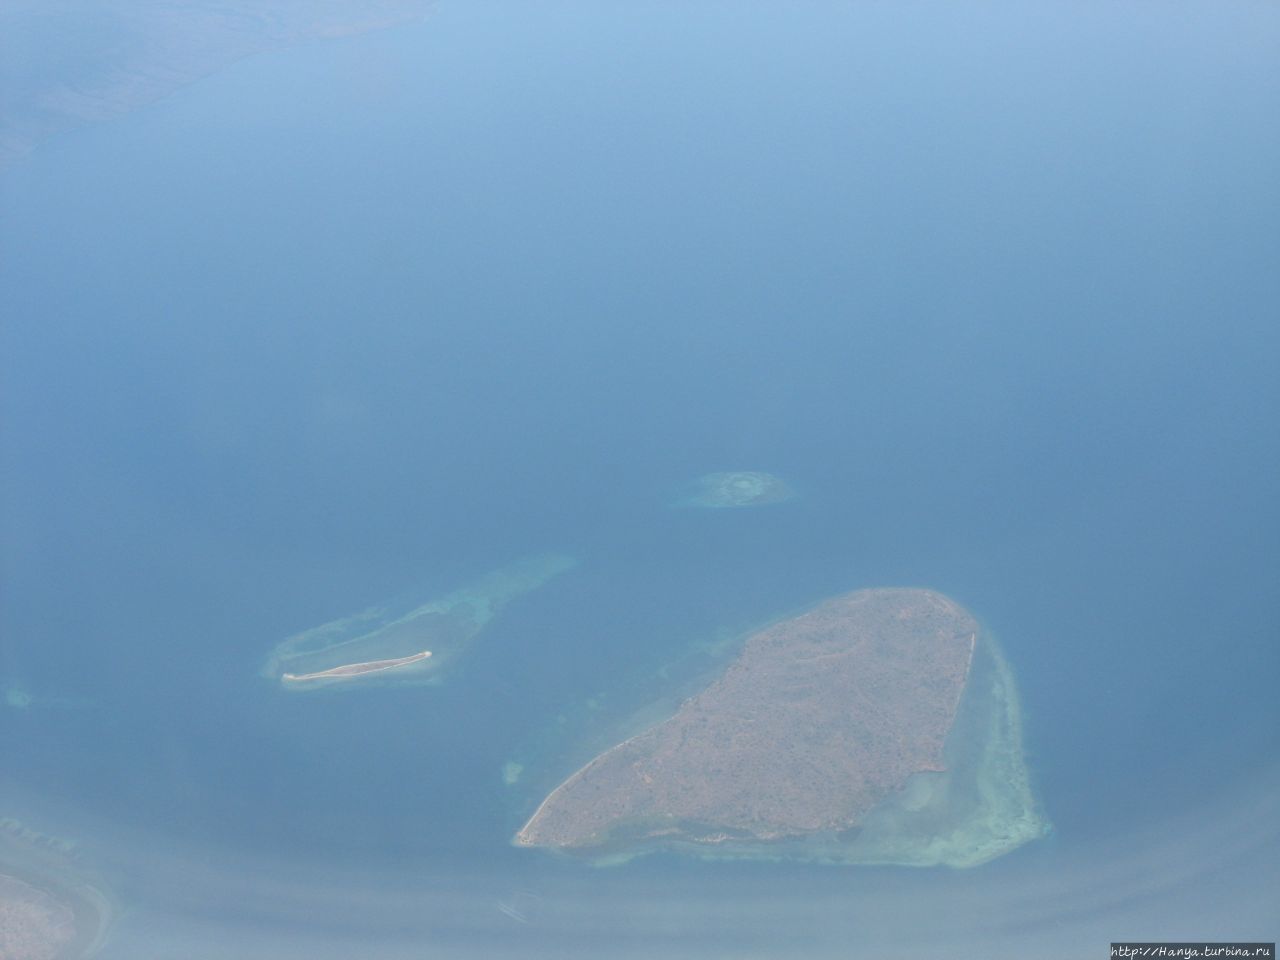 Аэропорт острова Флорес Лабуан Баджо, остров Флорес, Индонезия